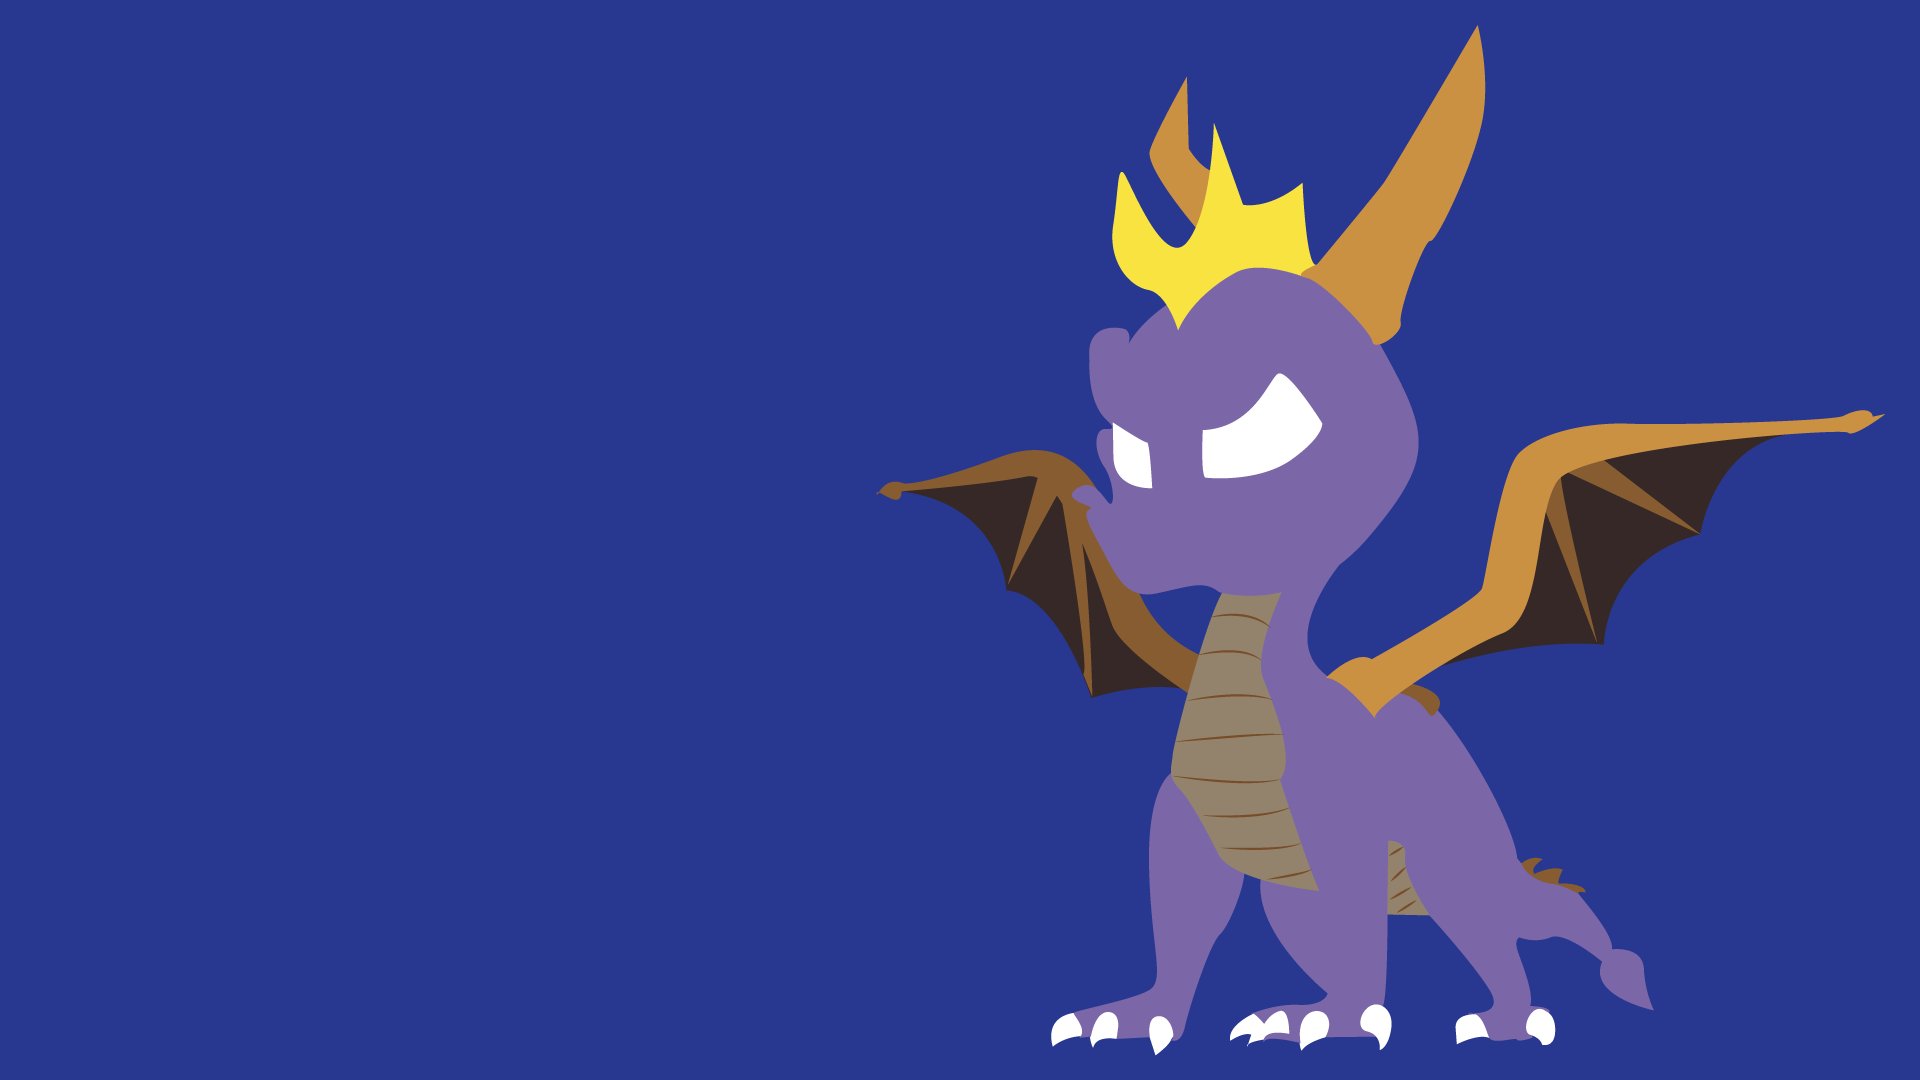 Spyro the Dragon HD Wallpaper